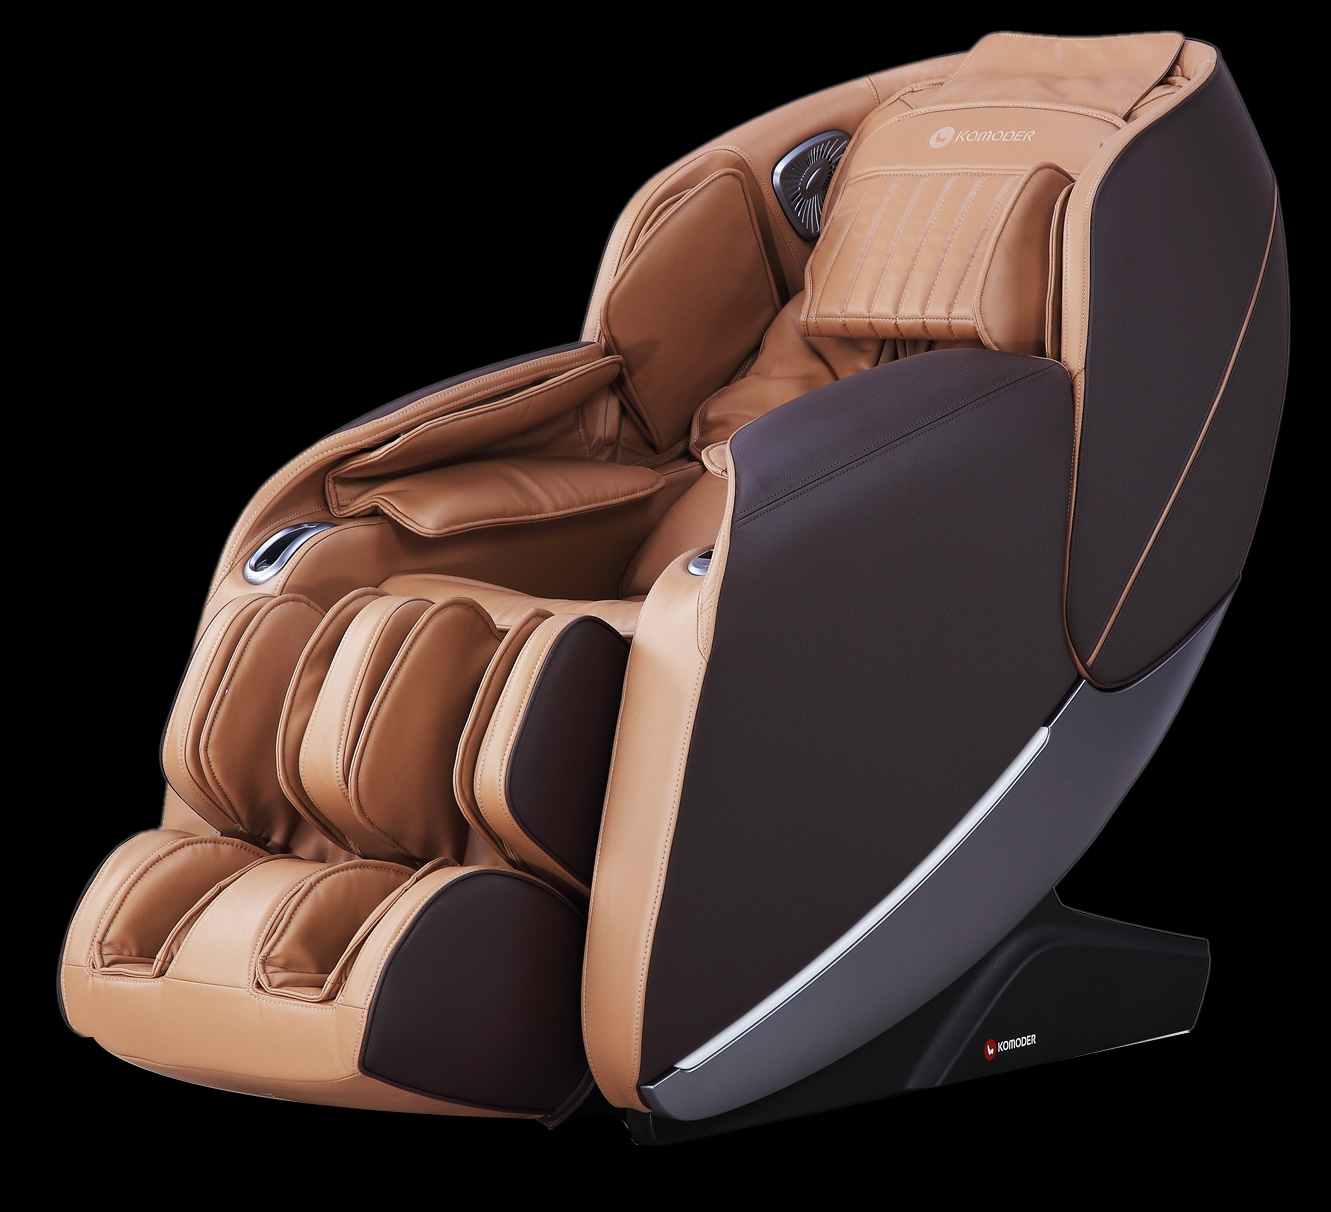 KOMODER MONACO 3D Massage Chair